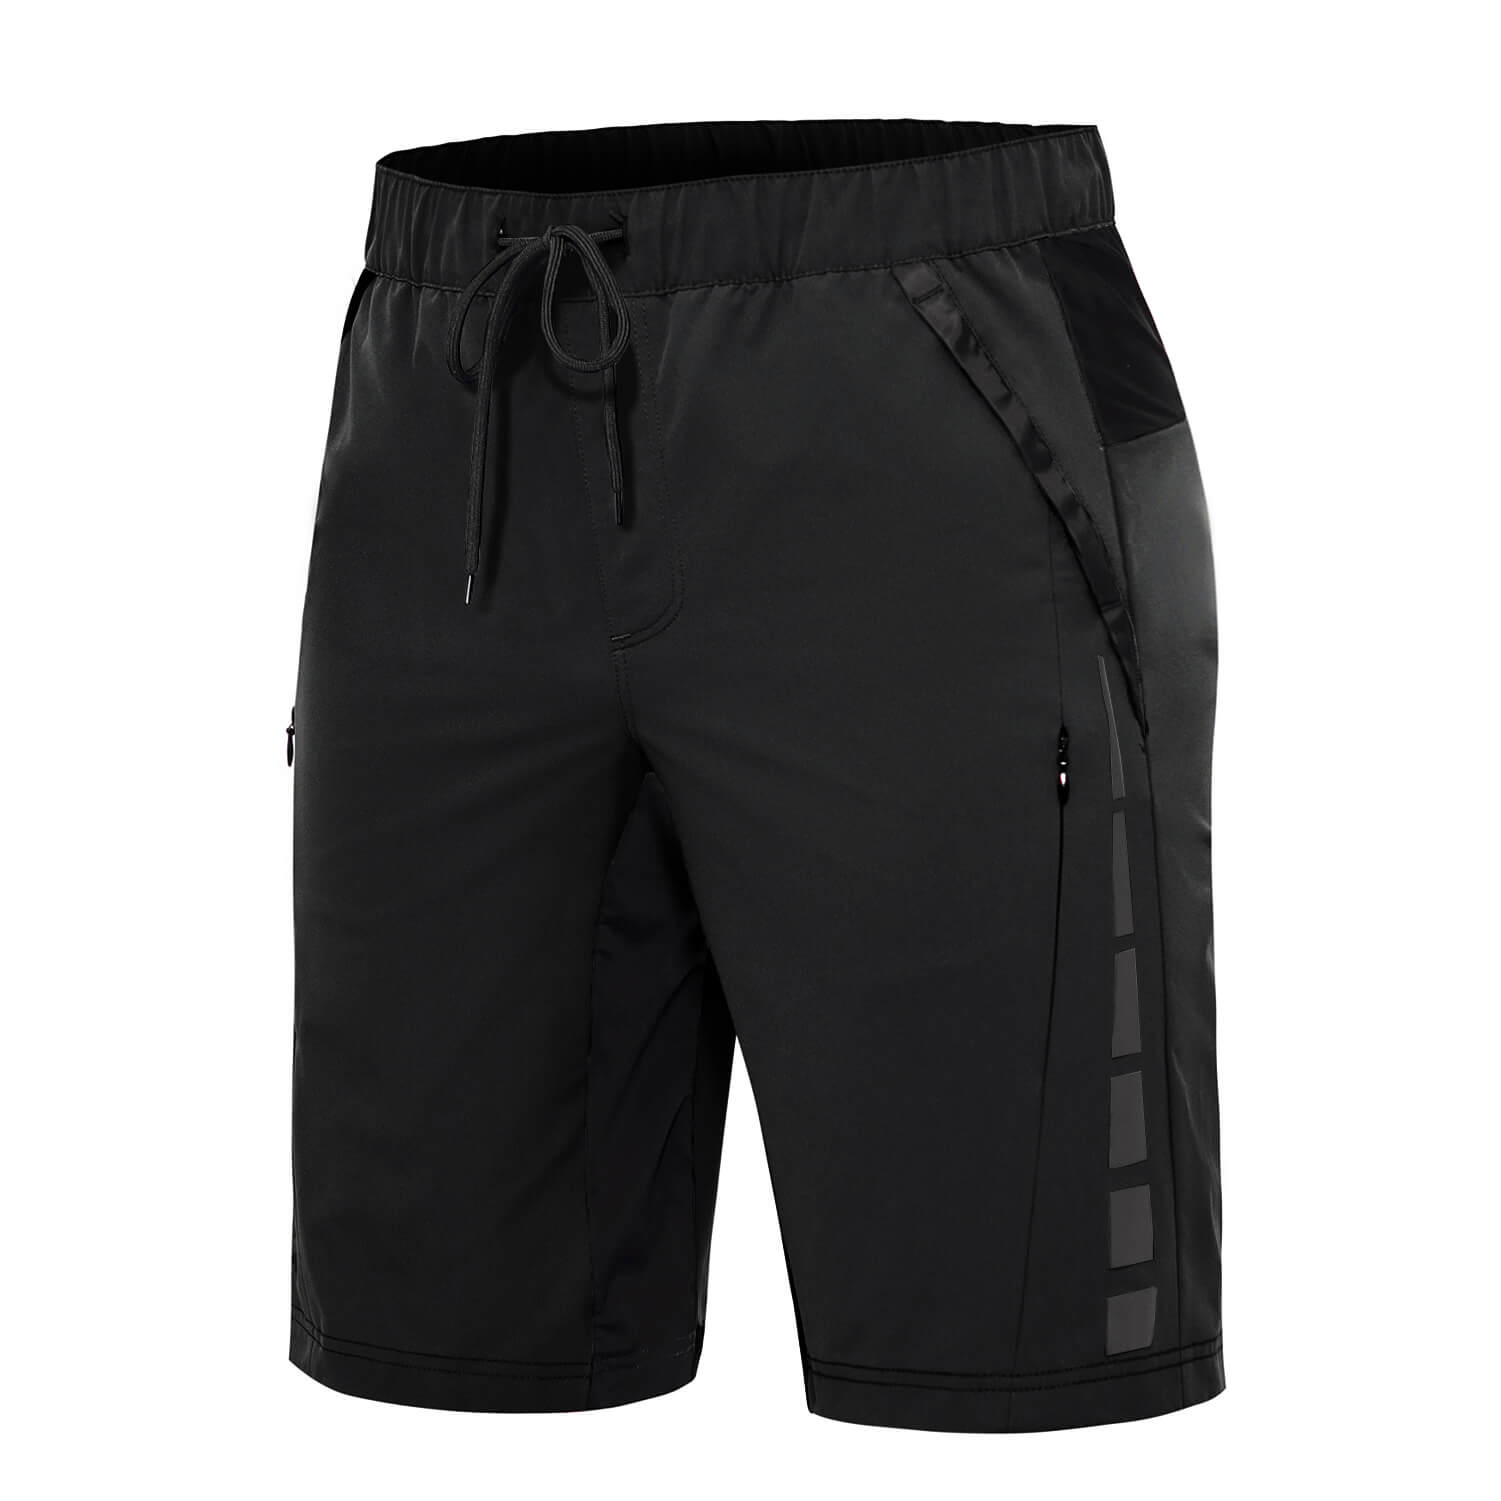 Cycorld MTB trousers, cycling shorts, men's cycling shorts, waterproof  mountain bike trousers